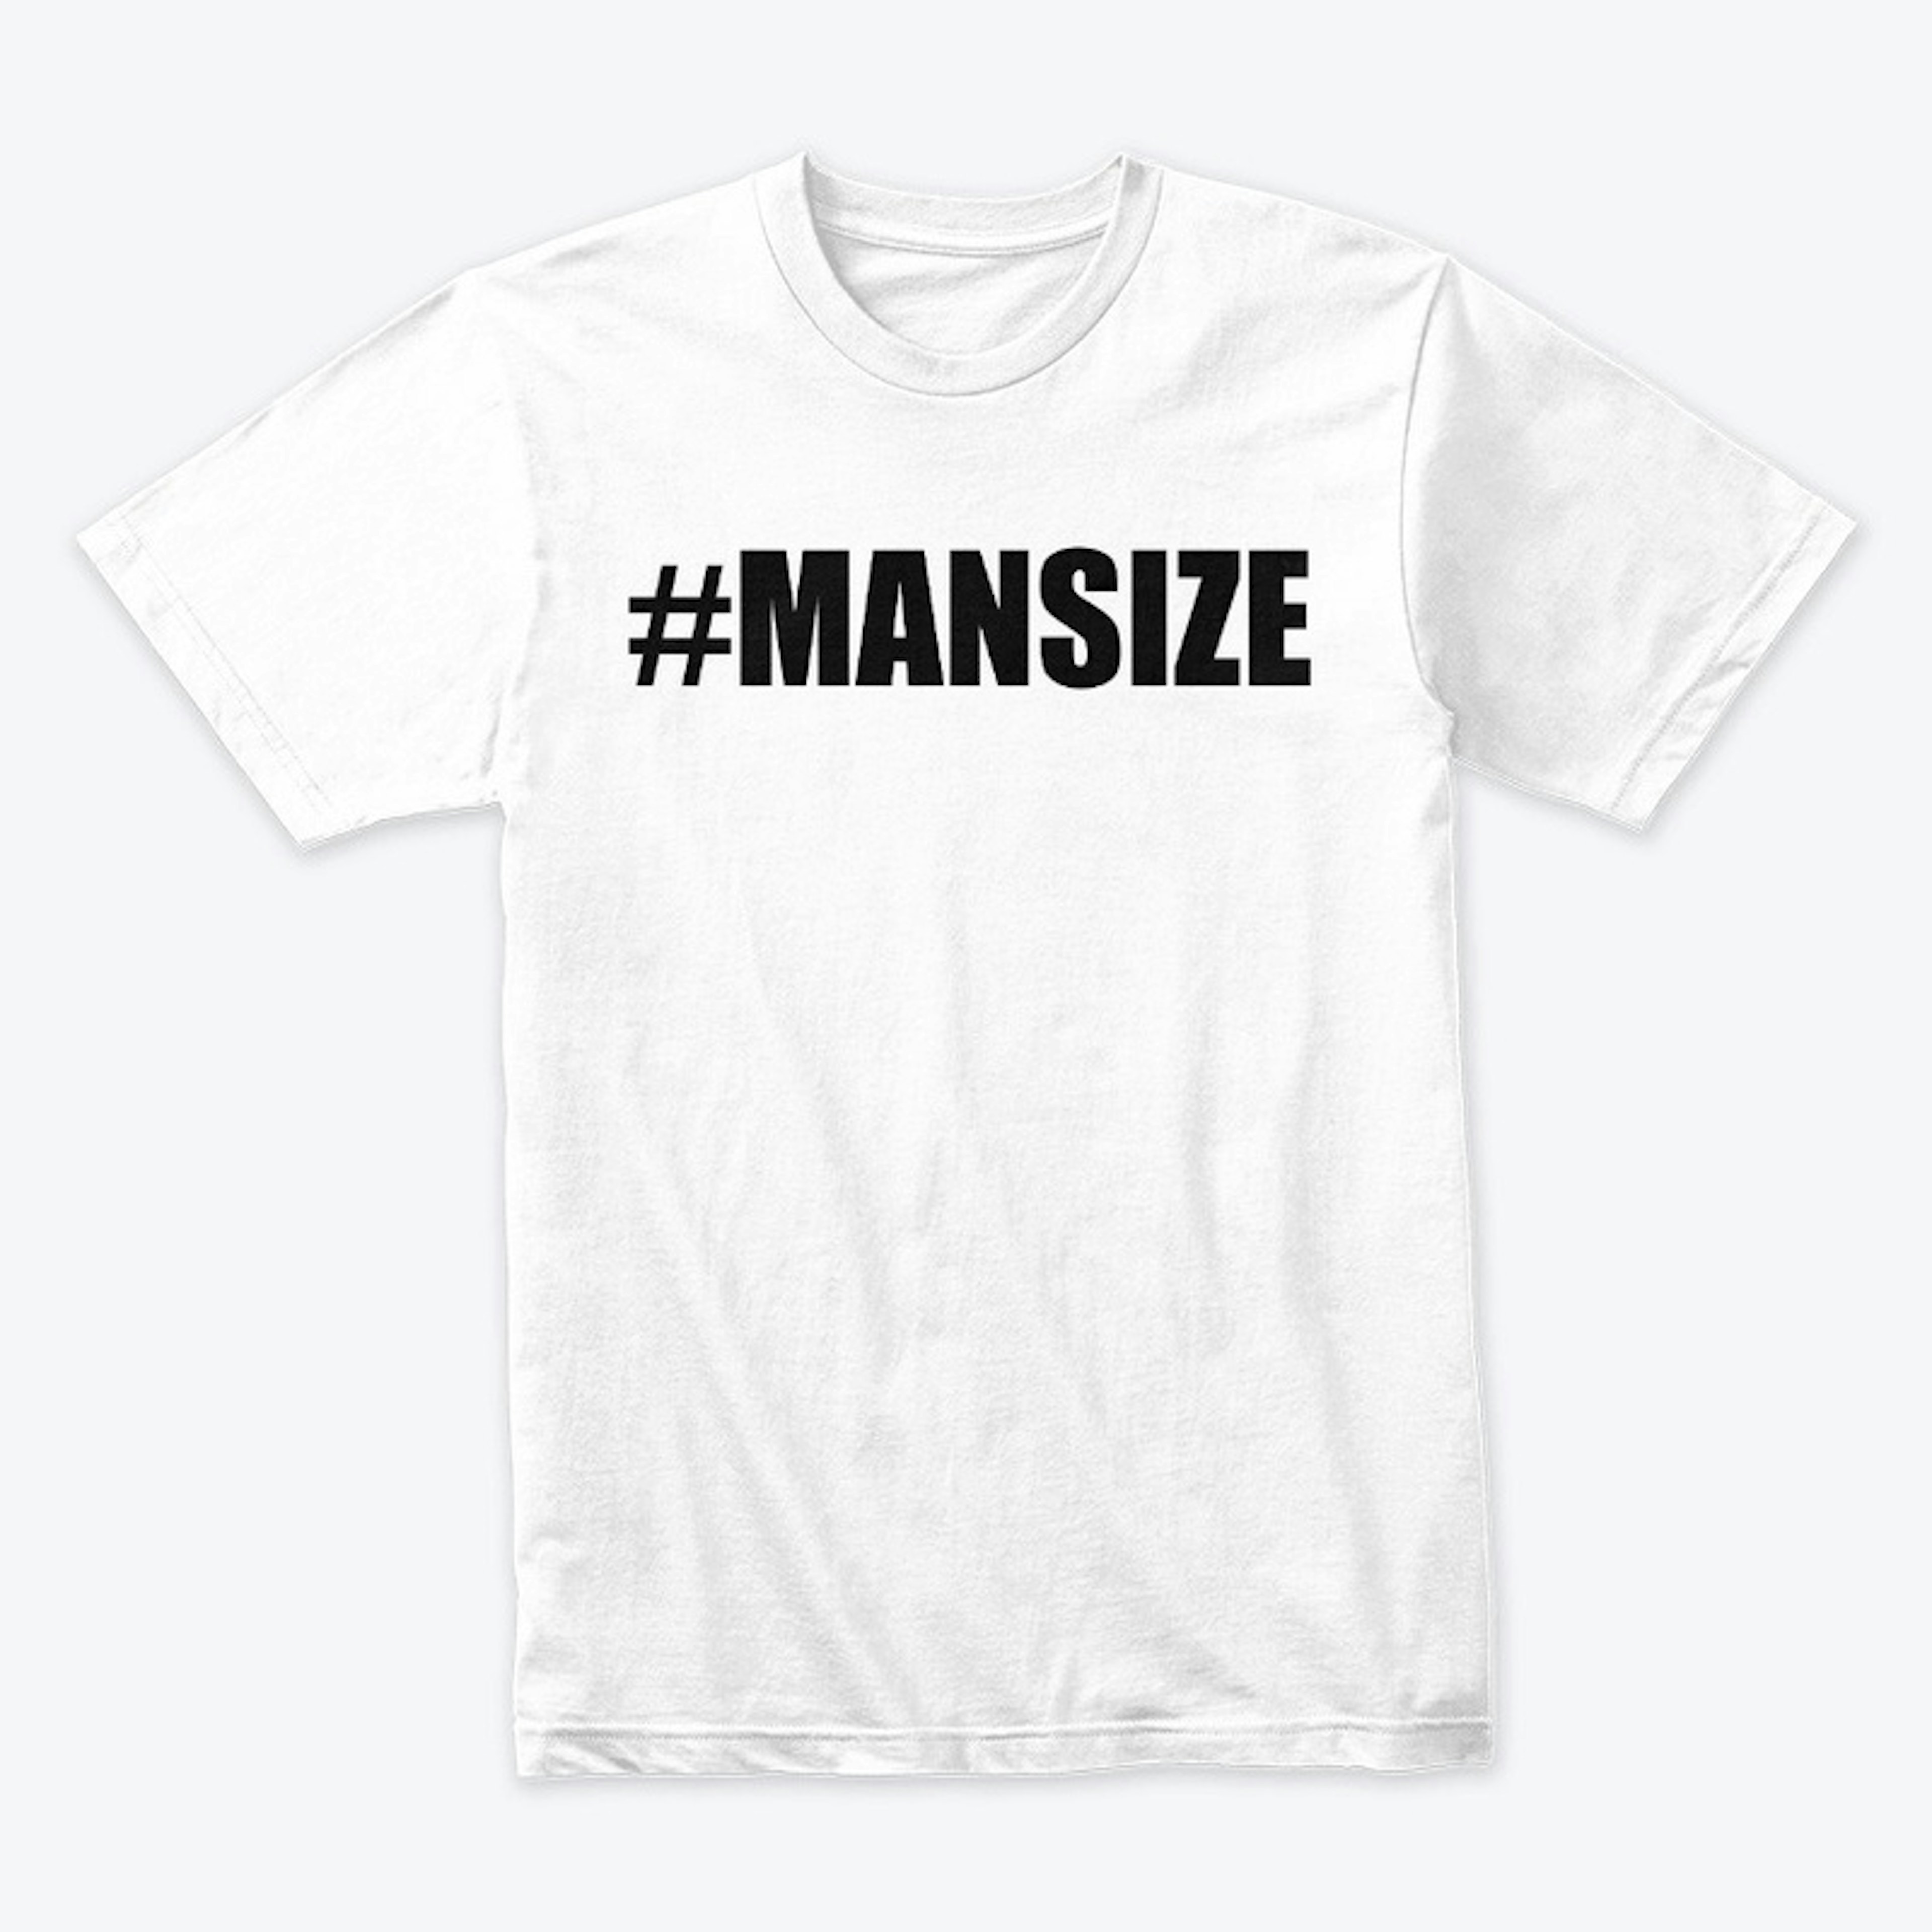 Mansize_apparel_black_logo